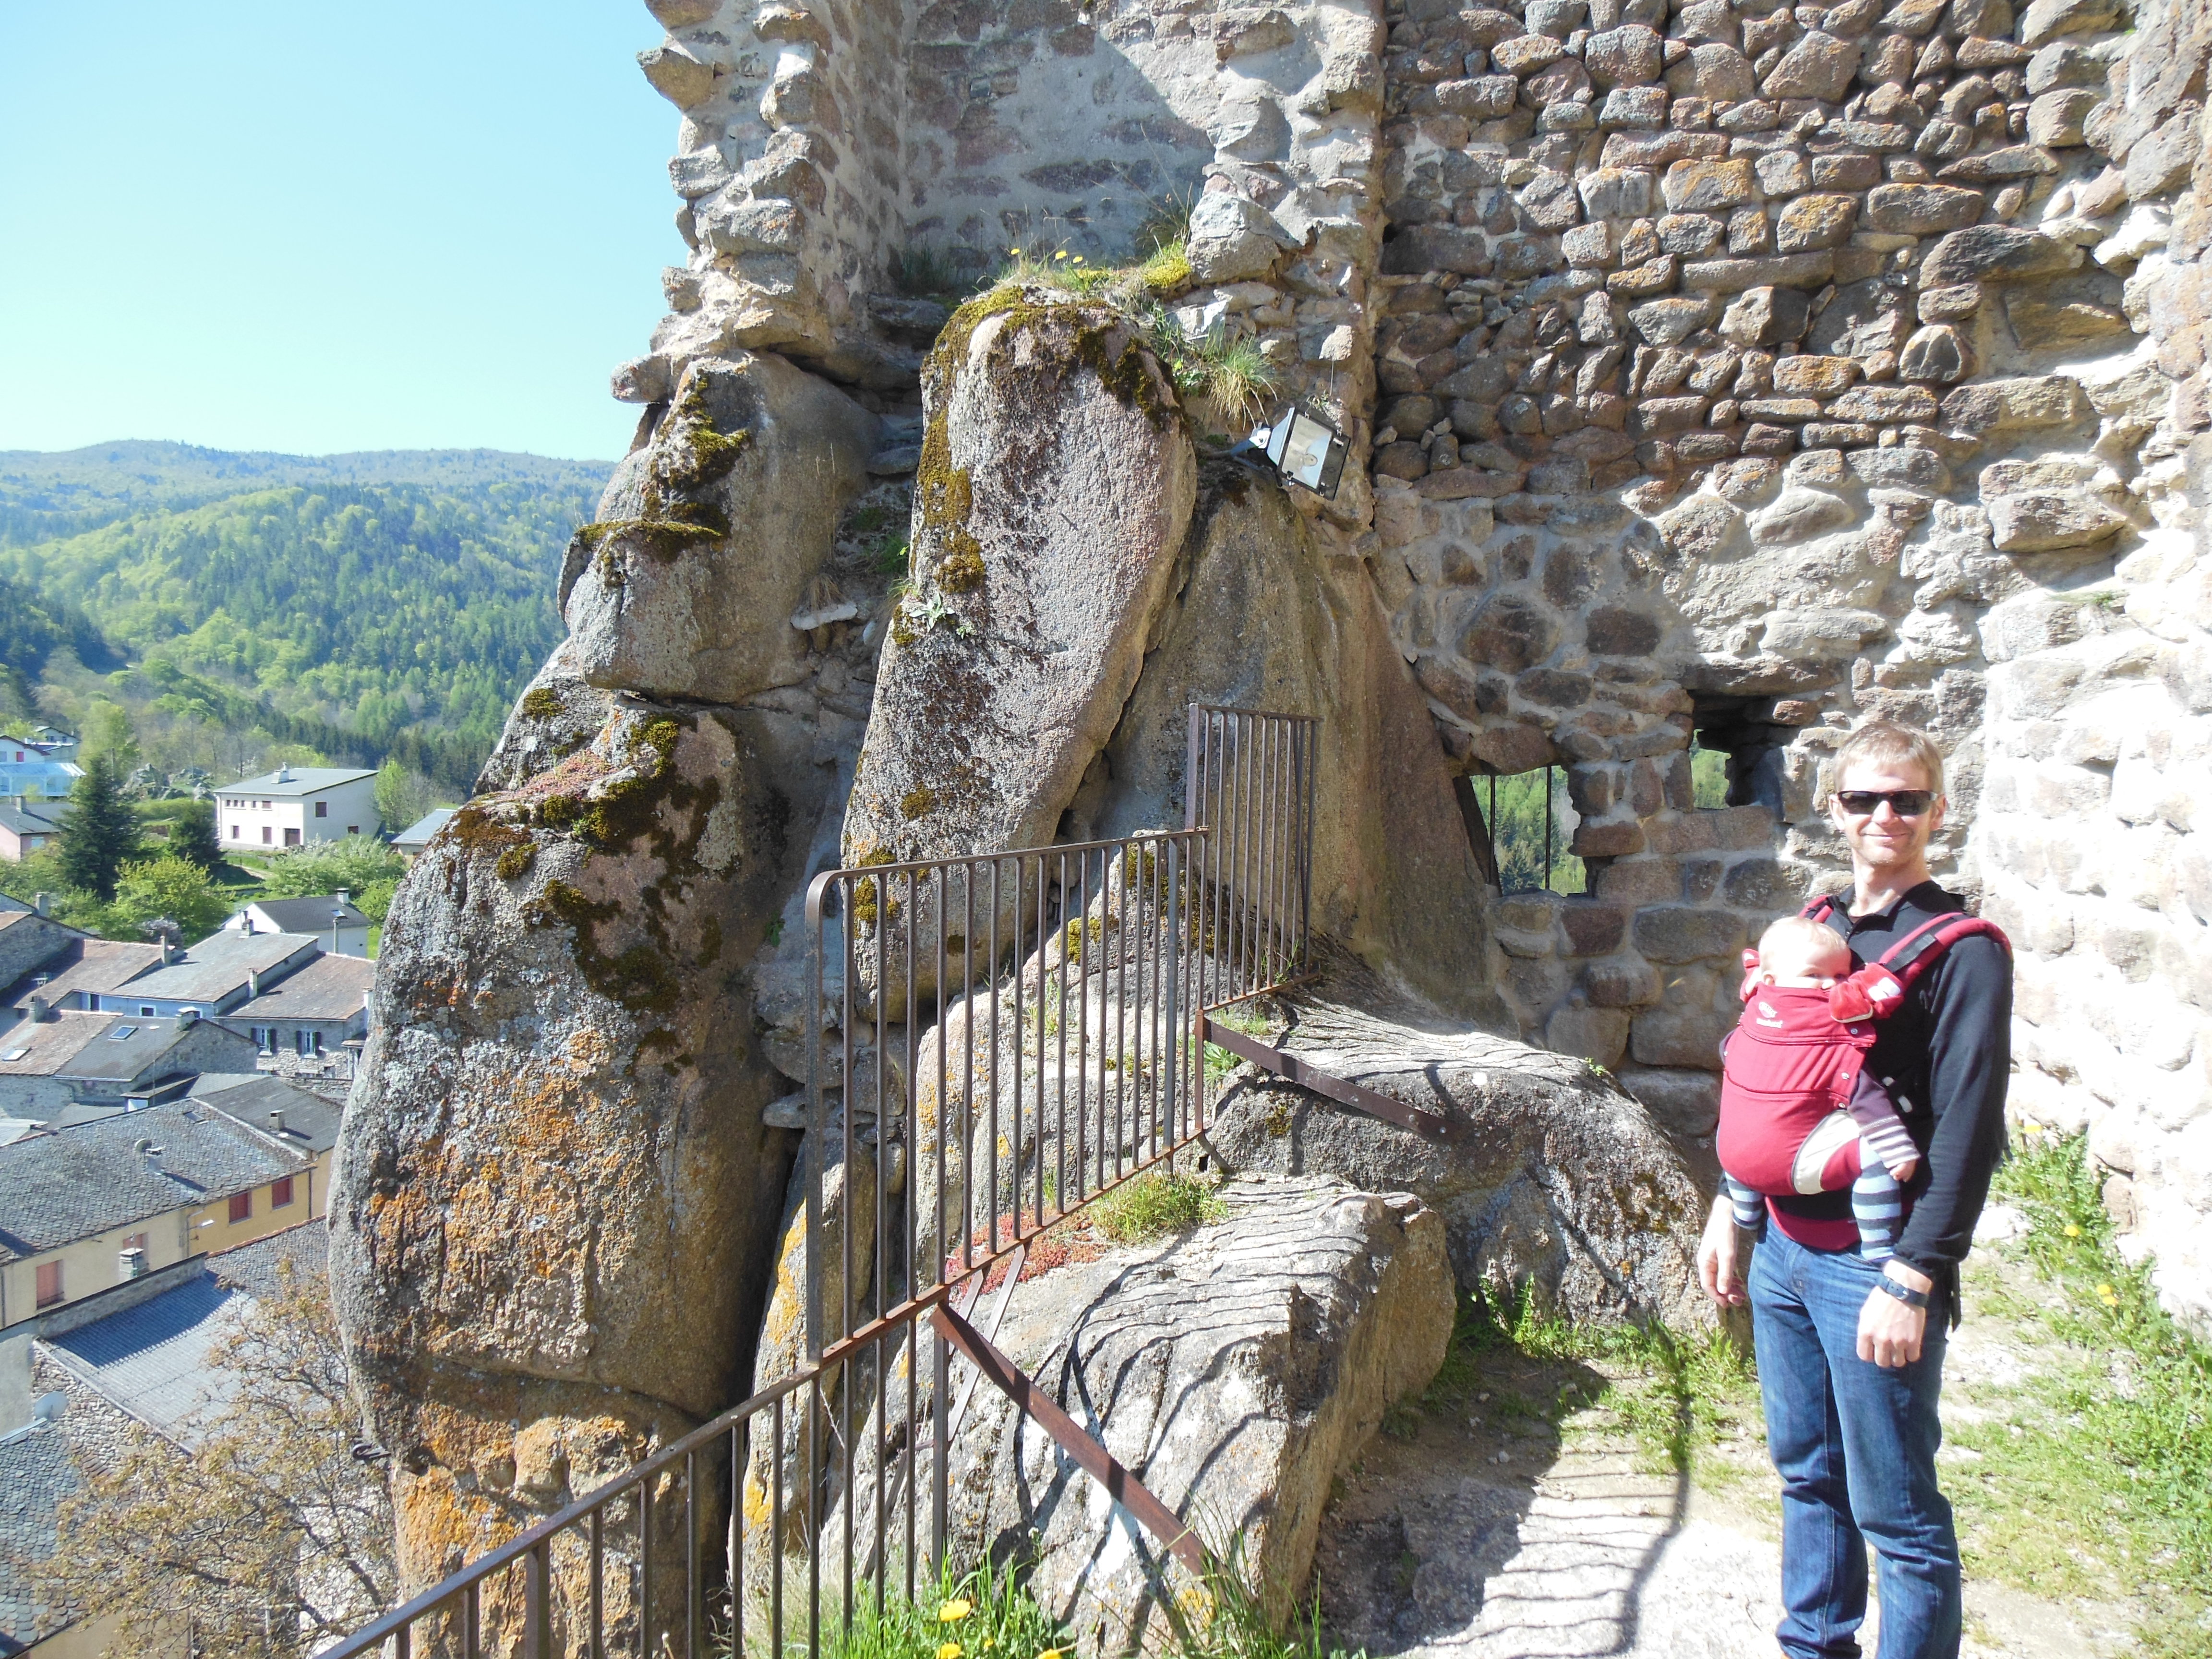 Me at Querigut castle